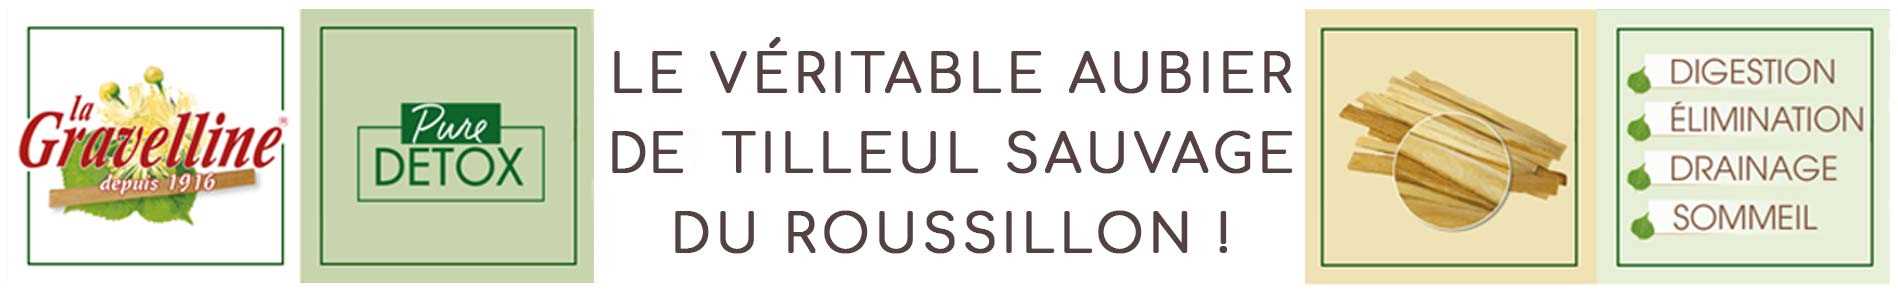 Découvrez le véritable aubier de Tilleul du Roussillon la Gravelline, disponible à l'herboristerie Louis